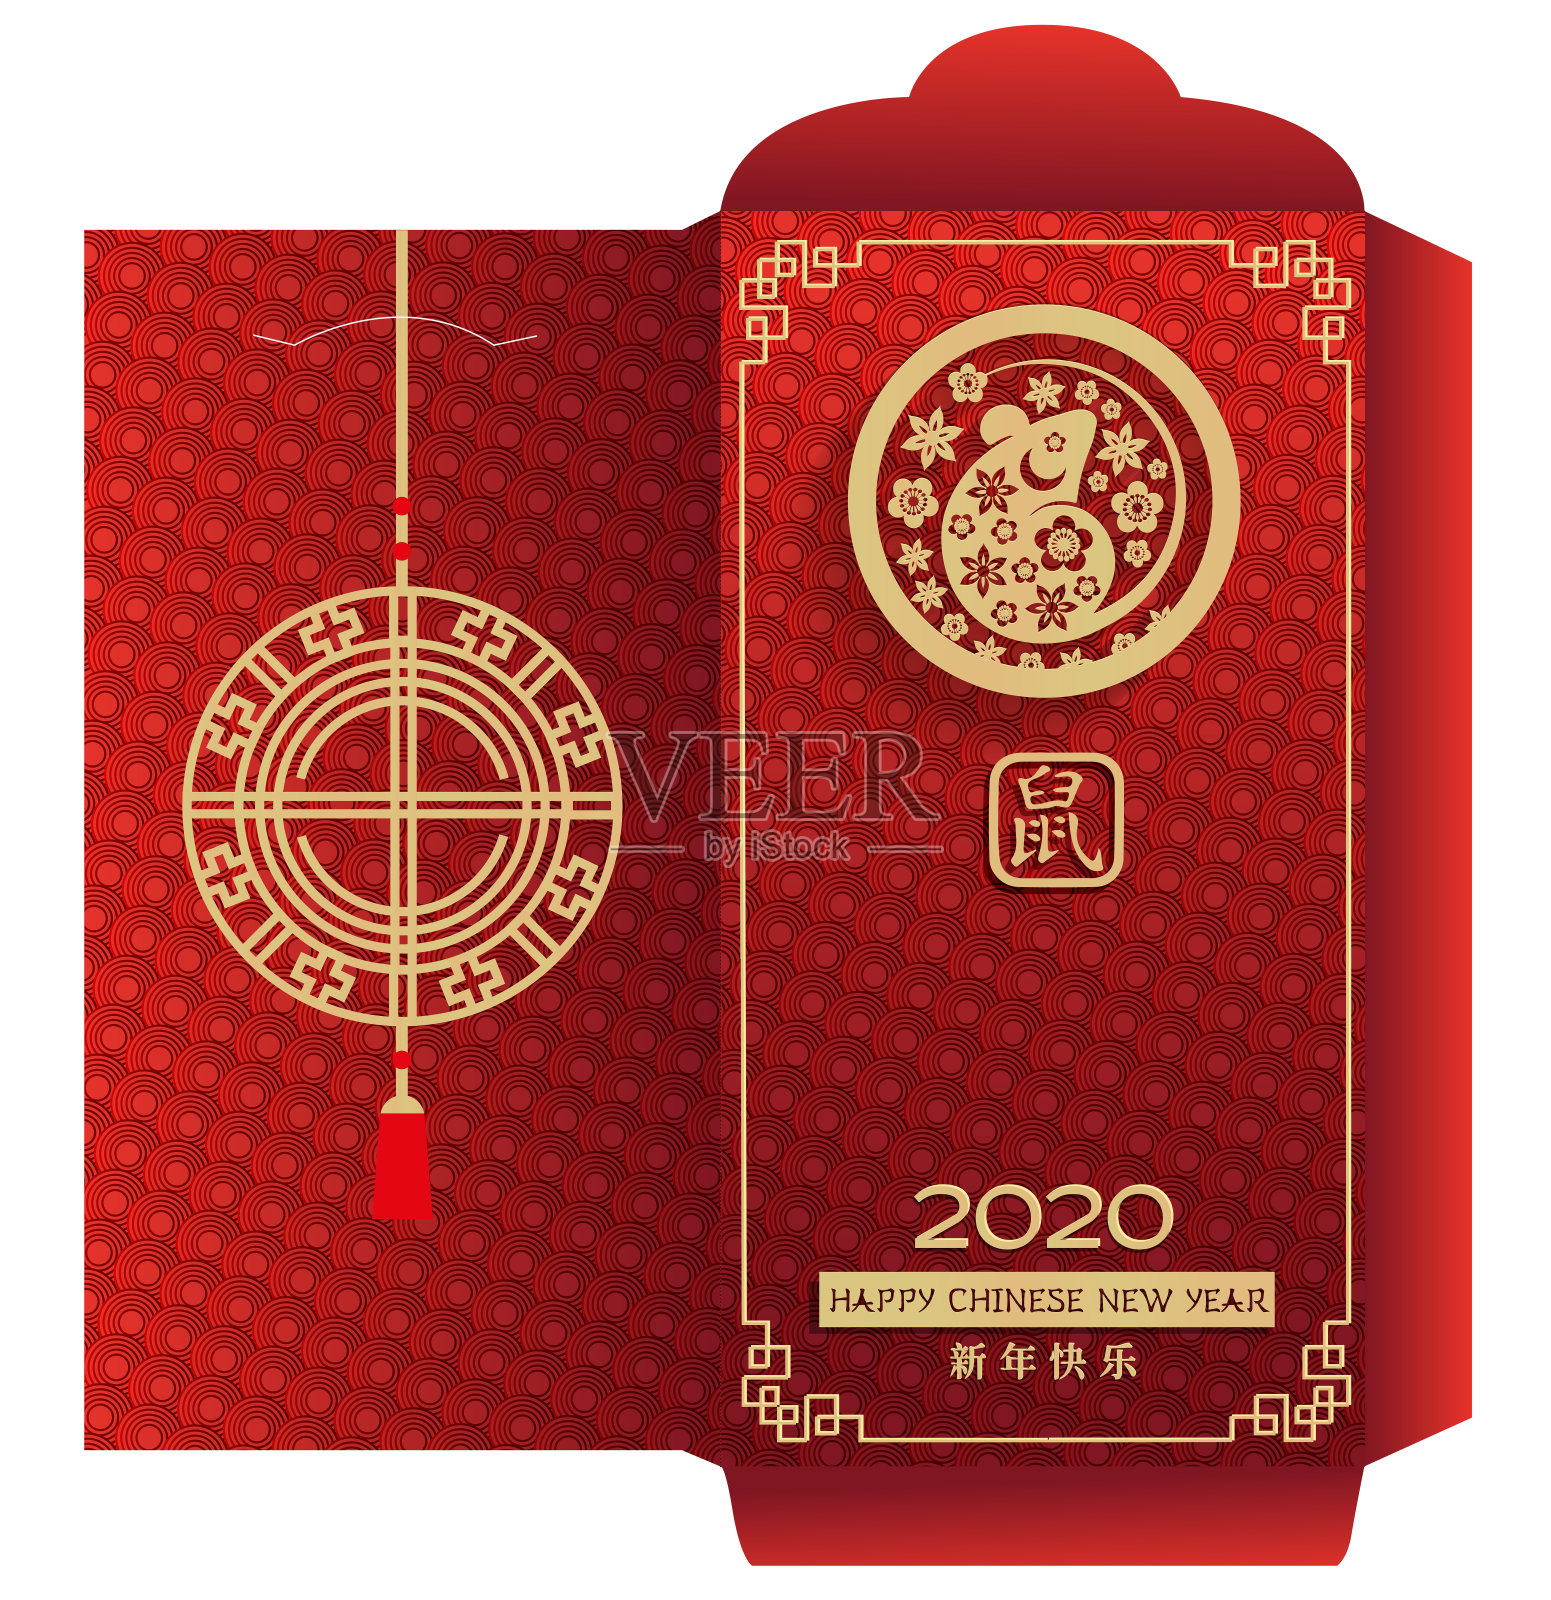 中国压岁钱红包。象形文字翻译:新年快乐。用金色的老鼠在花圈装饰。准备打印，在单独的层上剪线。设计模板素材